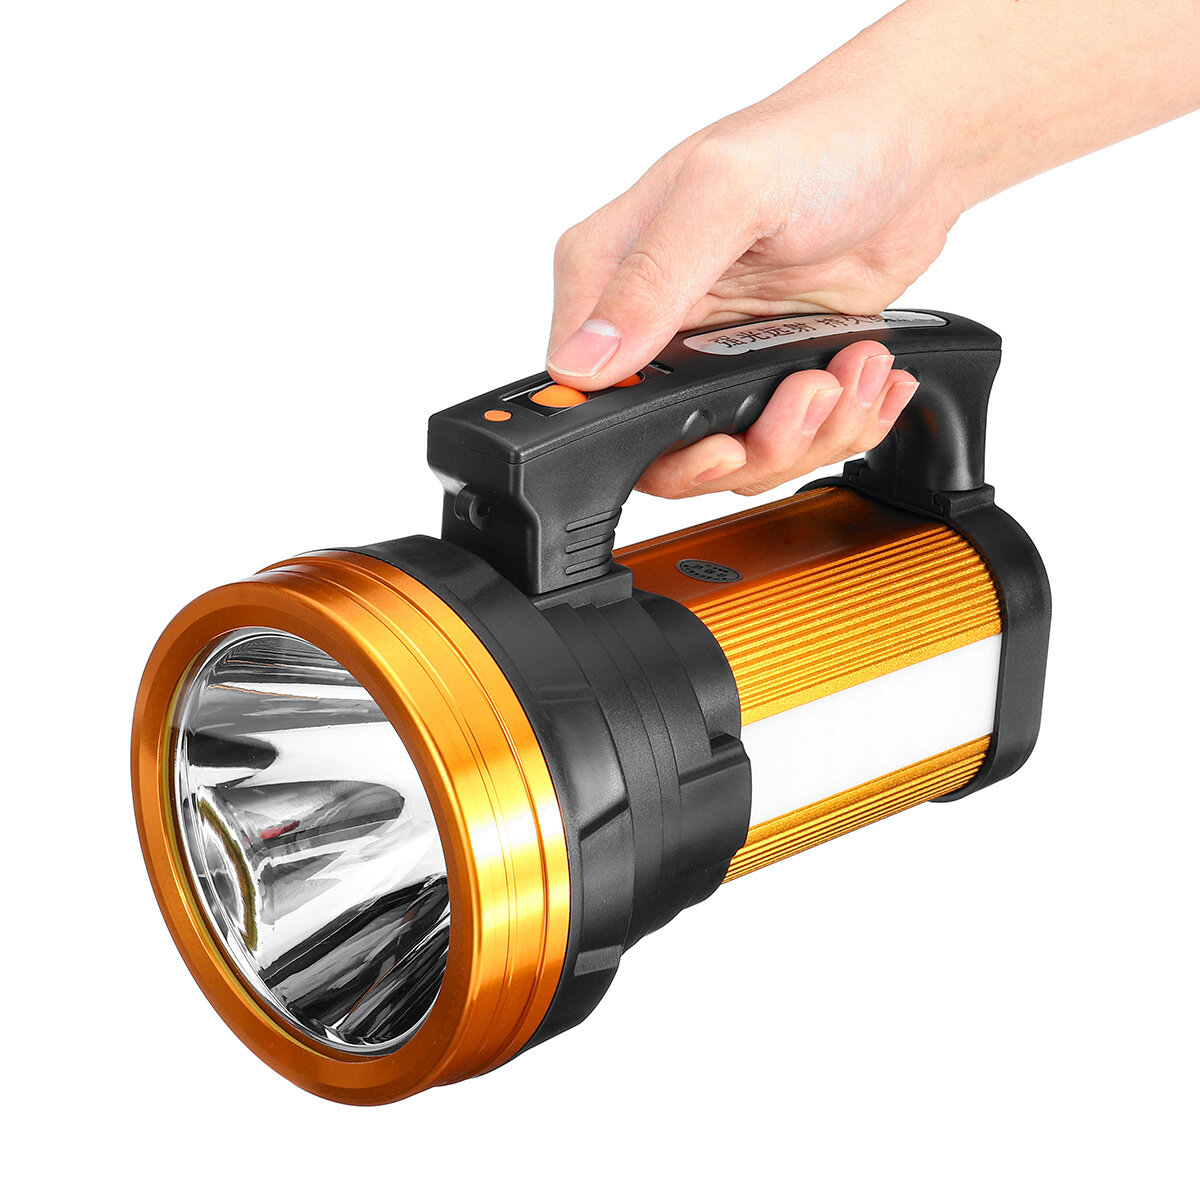 Wodoodporna latarka robocza LED o mocy 500 W, jasności 3000 lm, z zasięgiem 1000 m i portem USB do ładowania jest idealnym wyborem na kemping i sytuacje awaryjne.